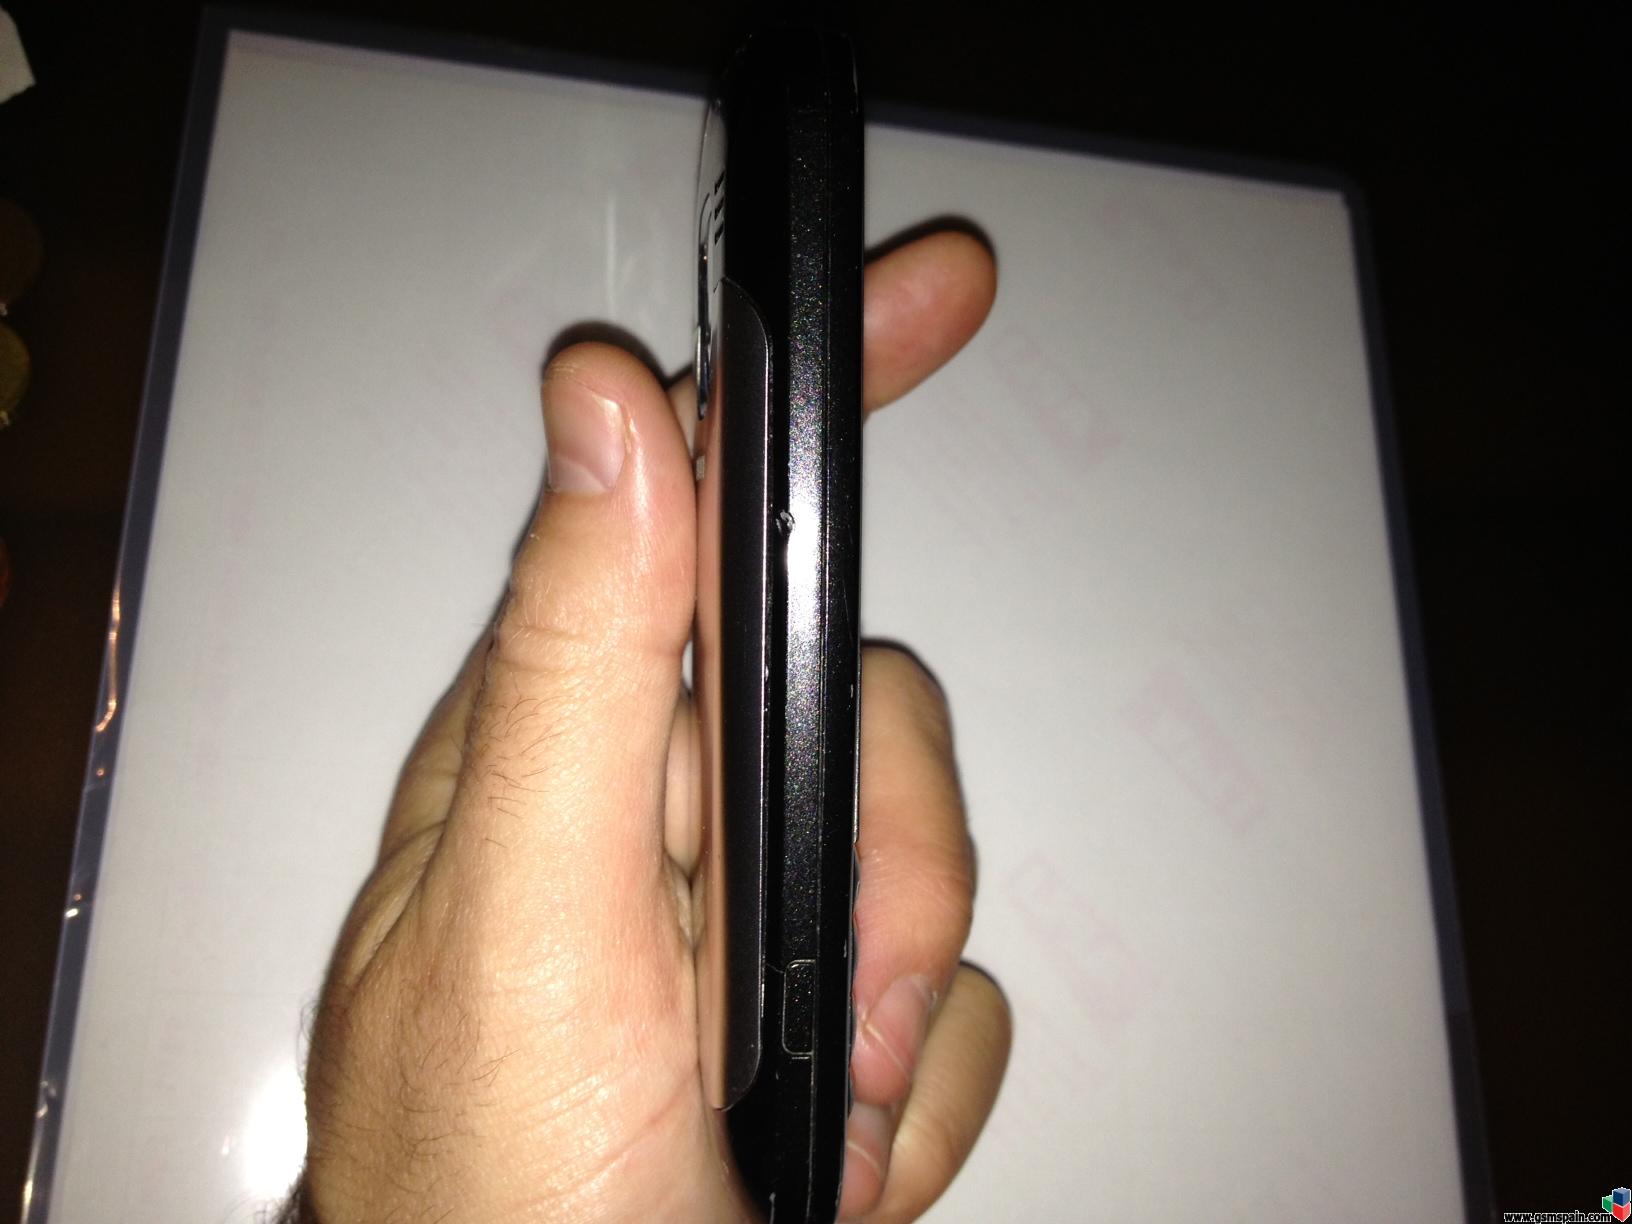 [VENDO] Nokia E5 Black por slo 30 